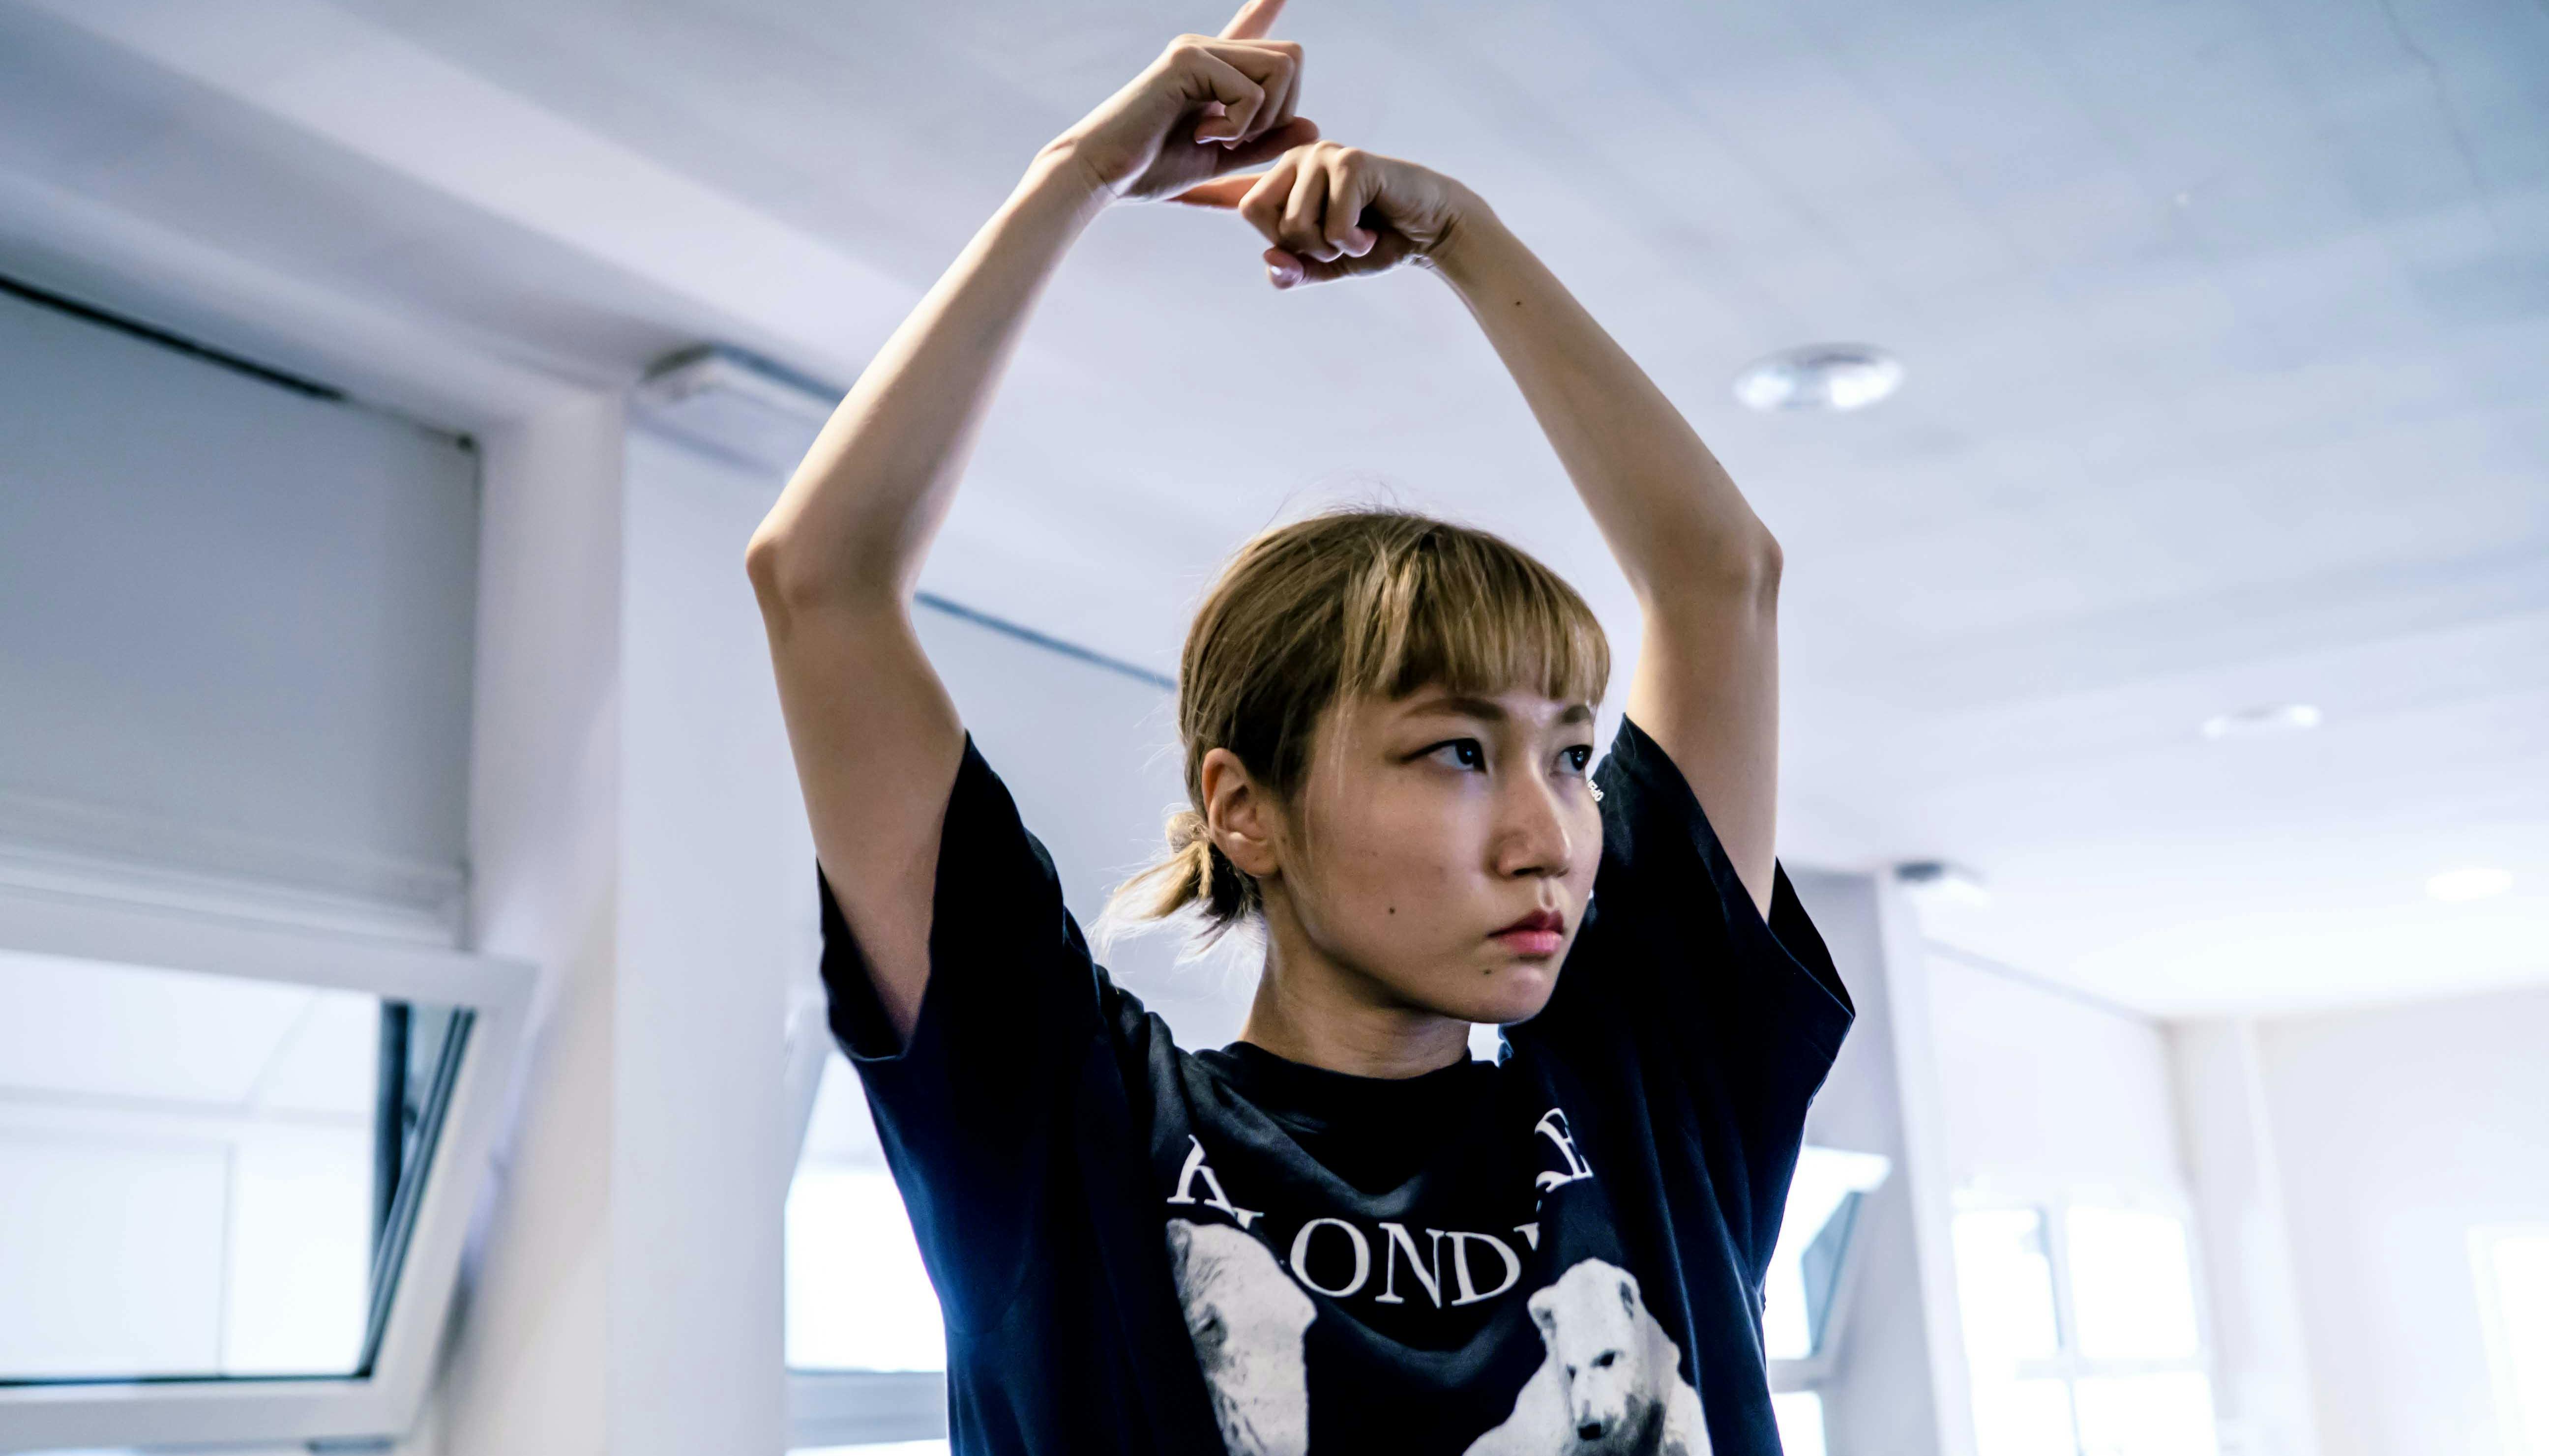 La danzatrice Yoko Omori ripresa a mezzo busto, con lo sguardo rivolto altrove ed entrambe le braccia sollevate e le mani riprese in un movimento circolare con l'indice puntato.